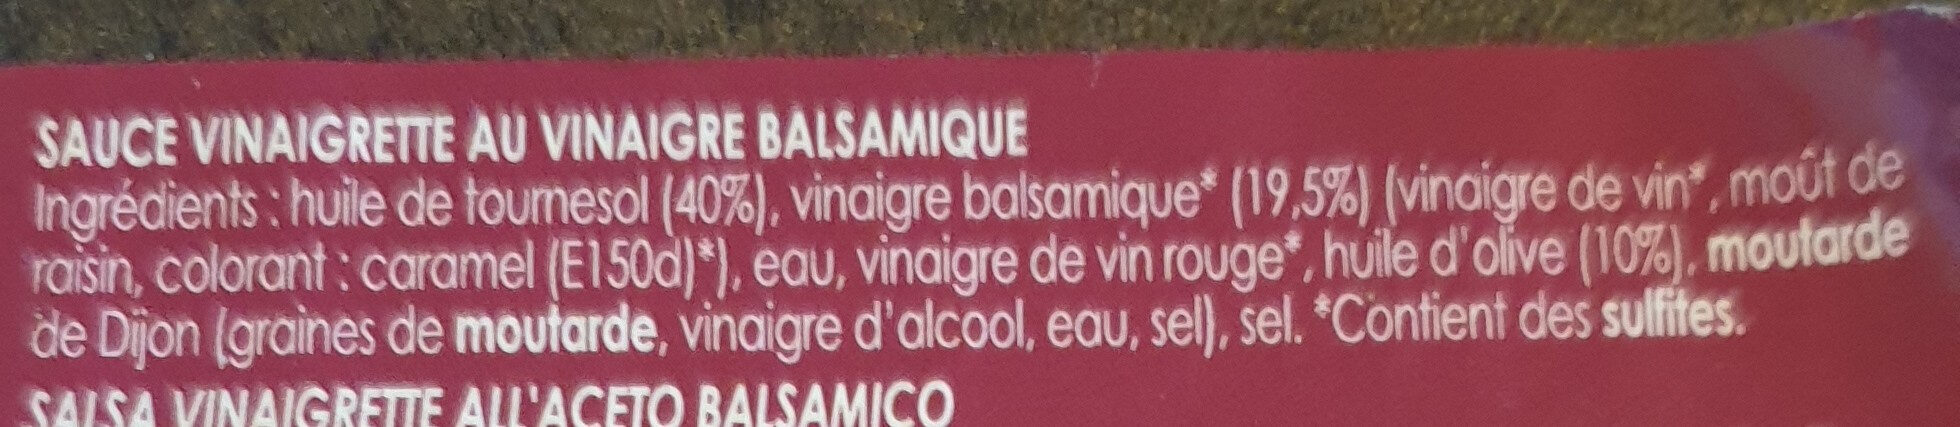 Sauce vinaigrette au vinaigre balsamique - Ingredients - fr